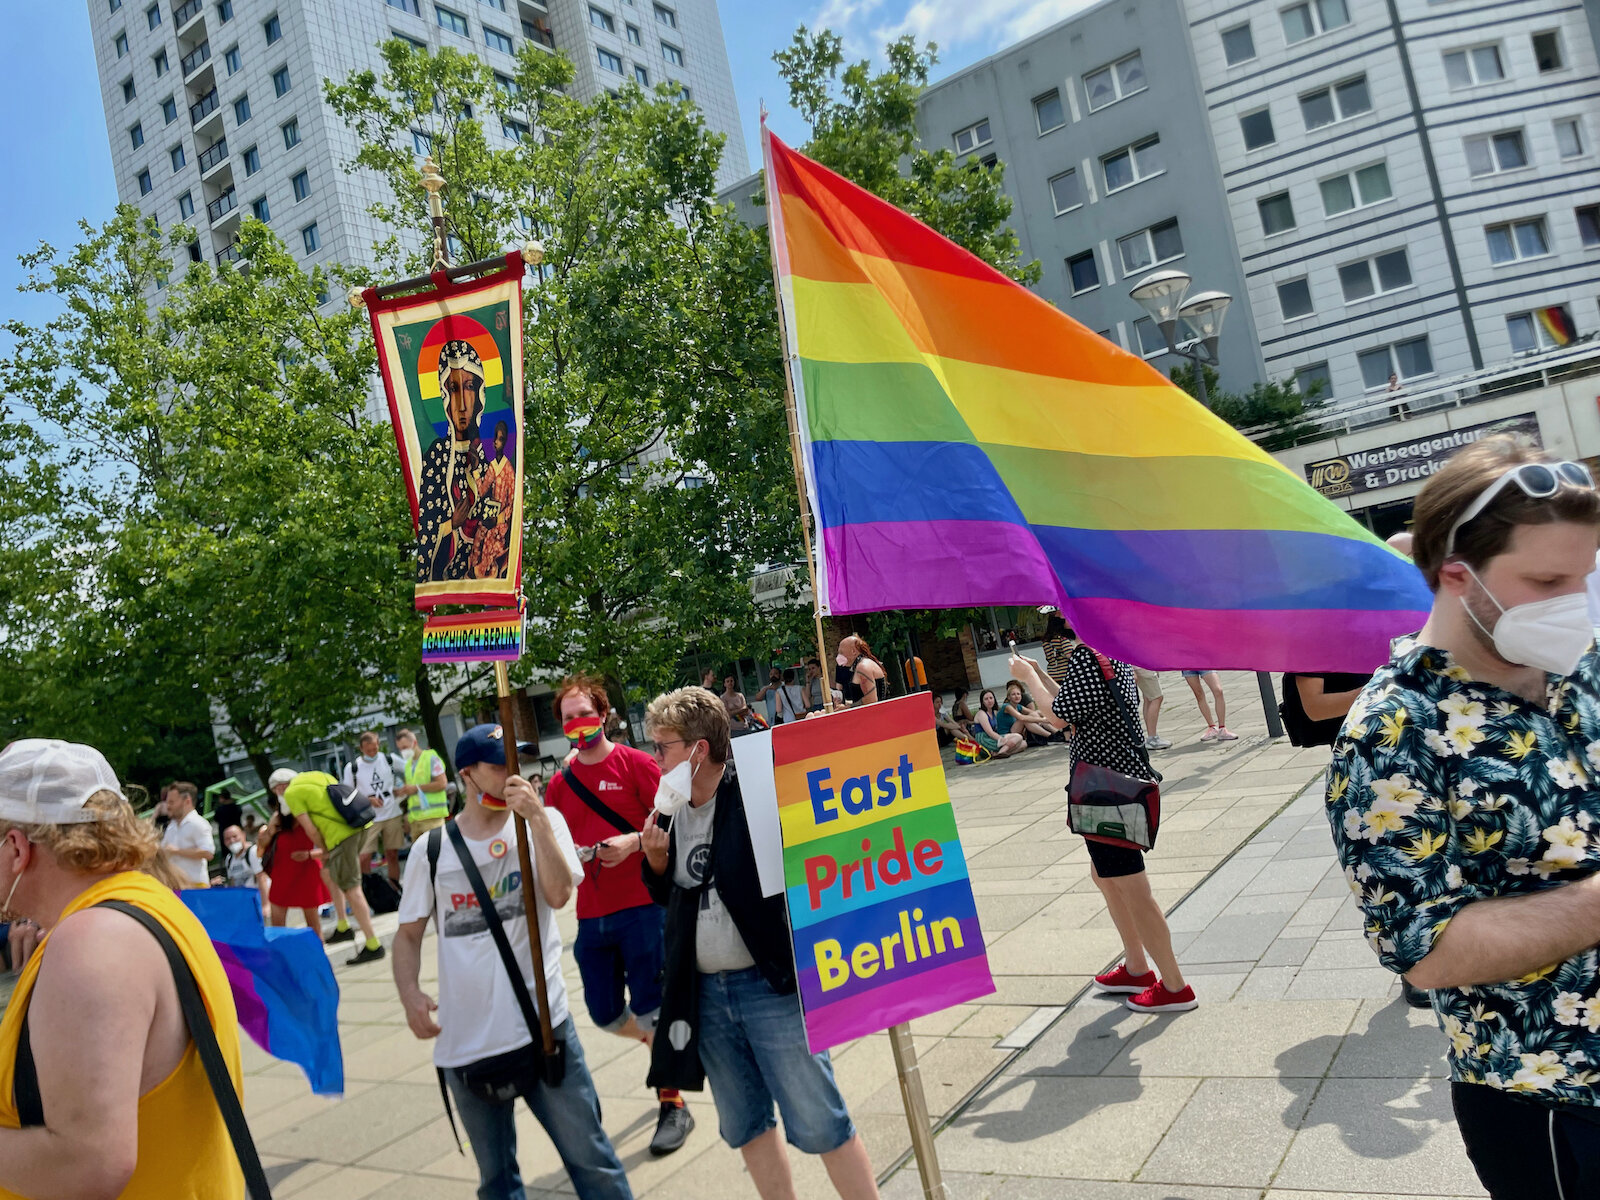 East Pride Berlin